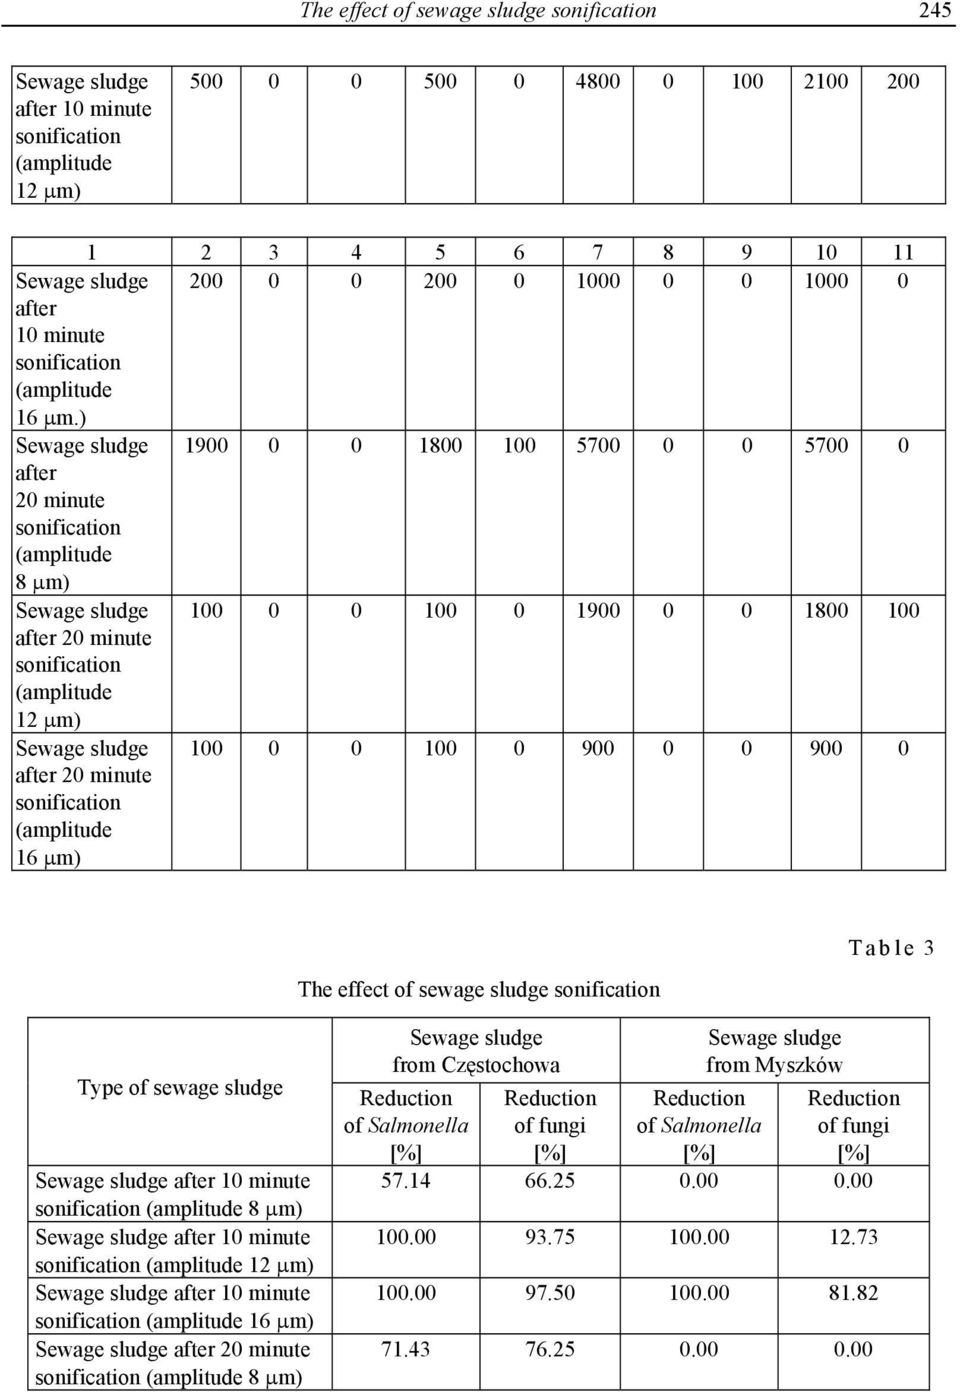 of sewage sludge Table 3 Type of sewage sludge after 10 minute 8 μm) after 10 minute 12 μm) after 10 minute 16 μm) after 20 minute 8 μm) from Częstochowa Reduction of